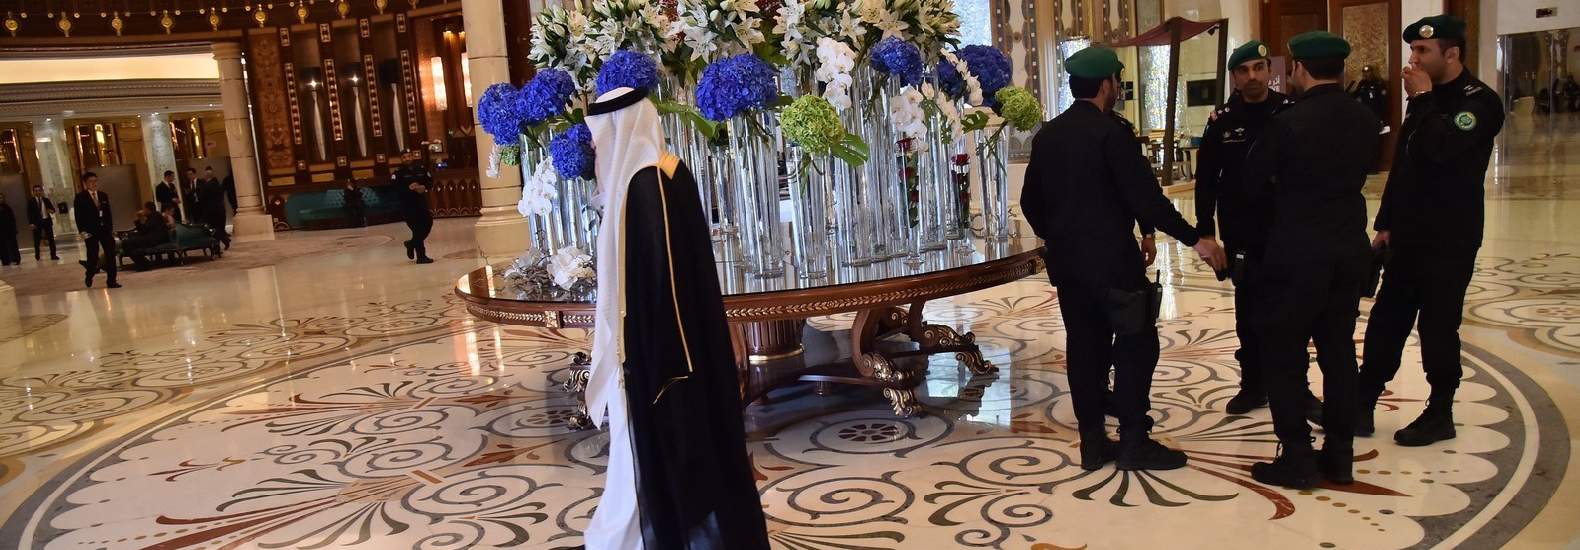 فندق ريتز كارلتون في الرياض، حيث تم اعتقال شخصيات سعودية بارزة بينهم أمراء ورجال أعمال (وكالات) 